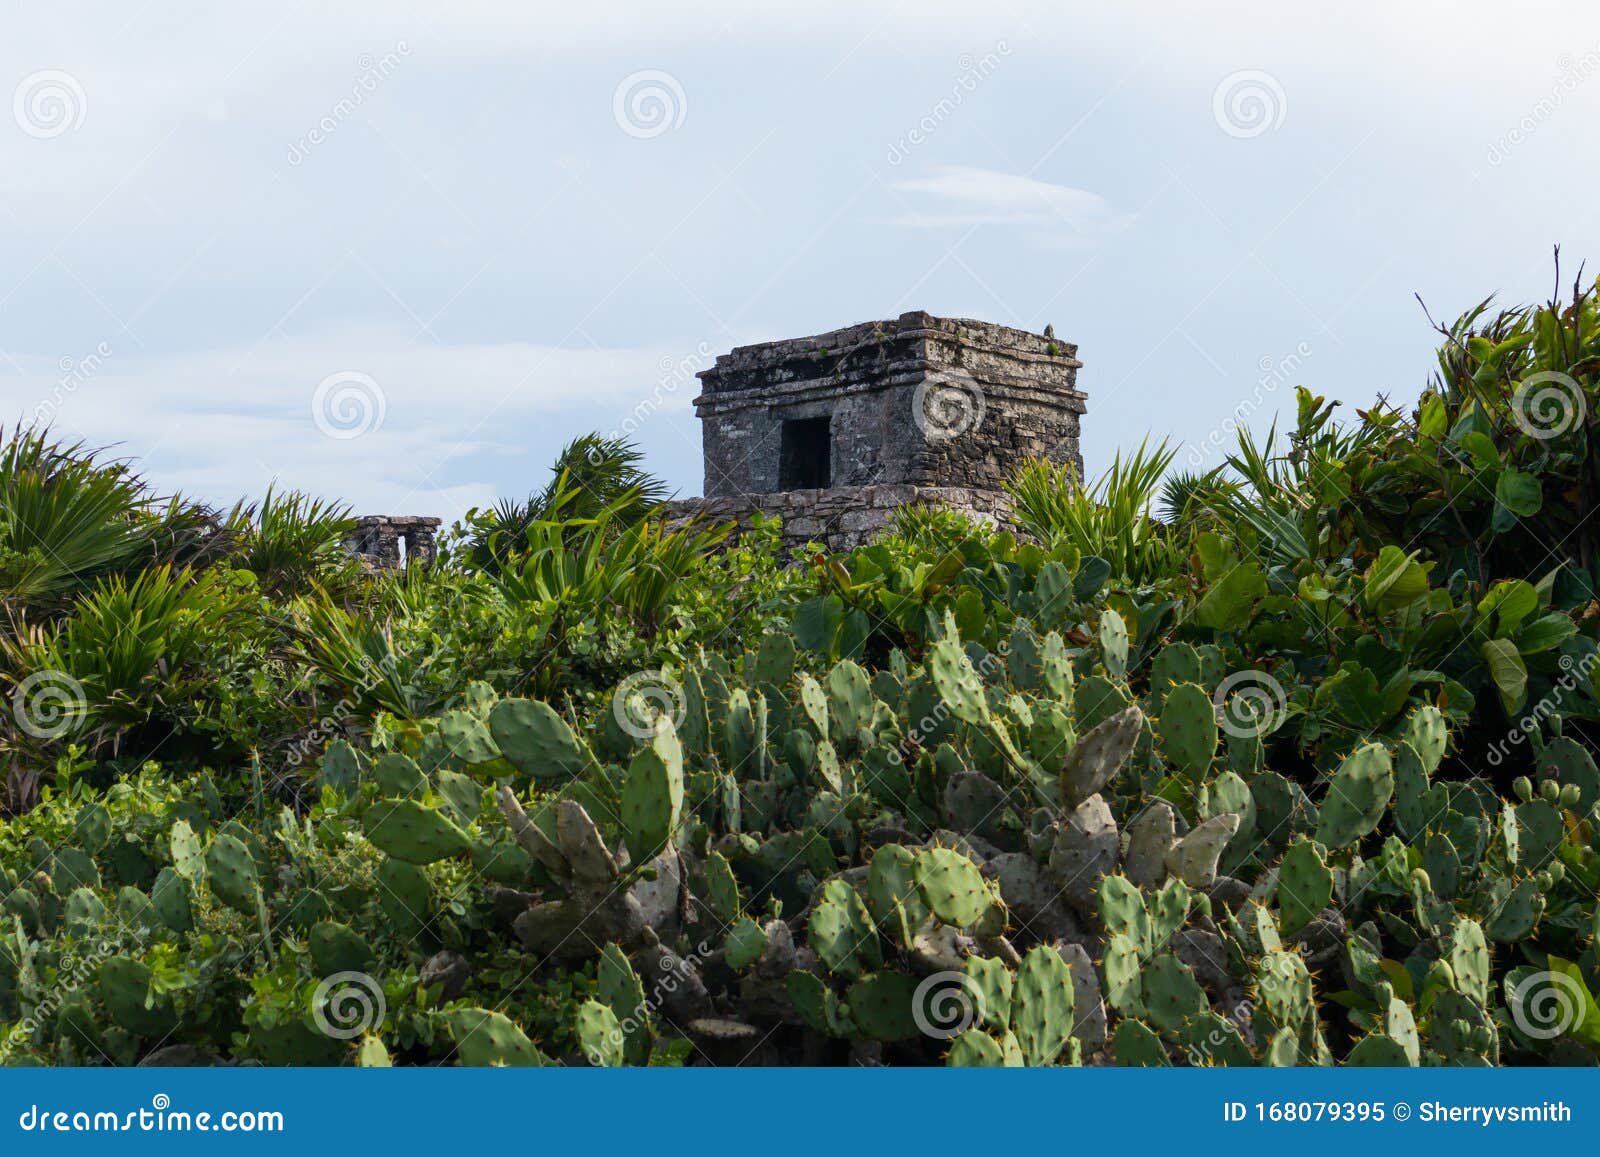 templo del dios viento mayan ruins